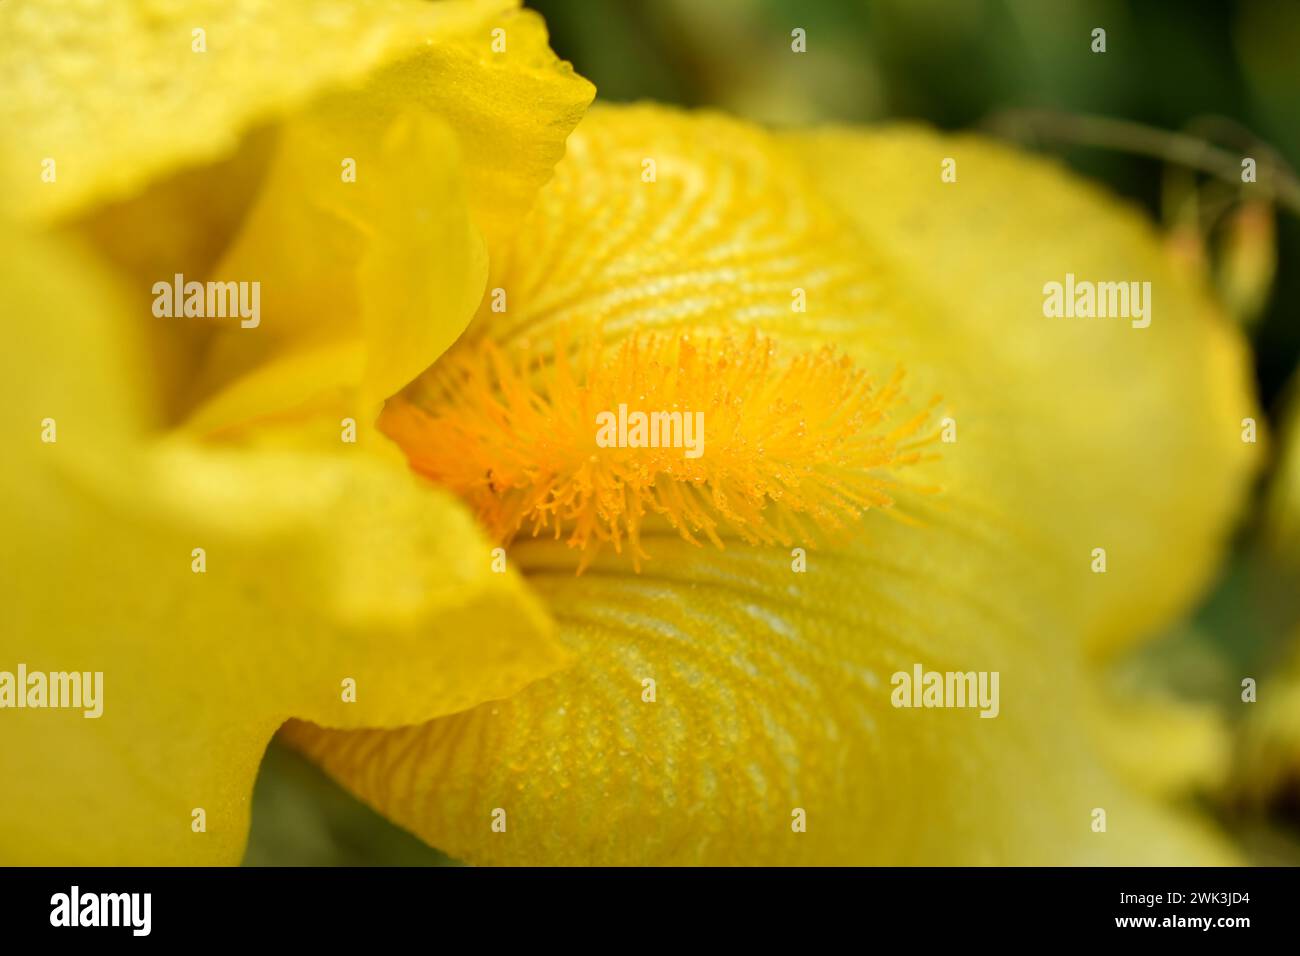 Immagine di sfondo. Biglietto d'auguri. Il fiore dell'Iris, i suoi petali e la pistola sono gialli. Foto Stock